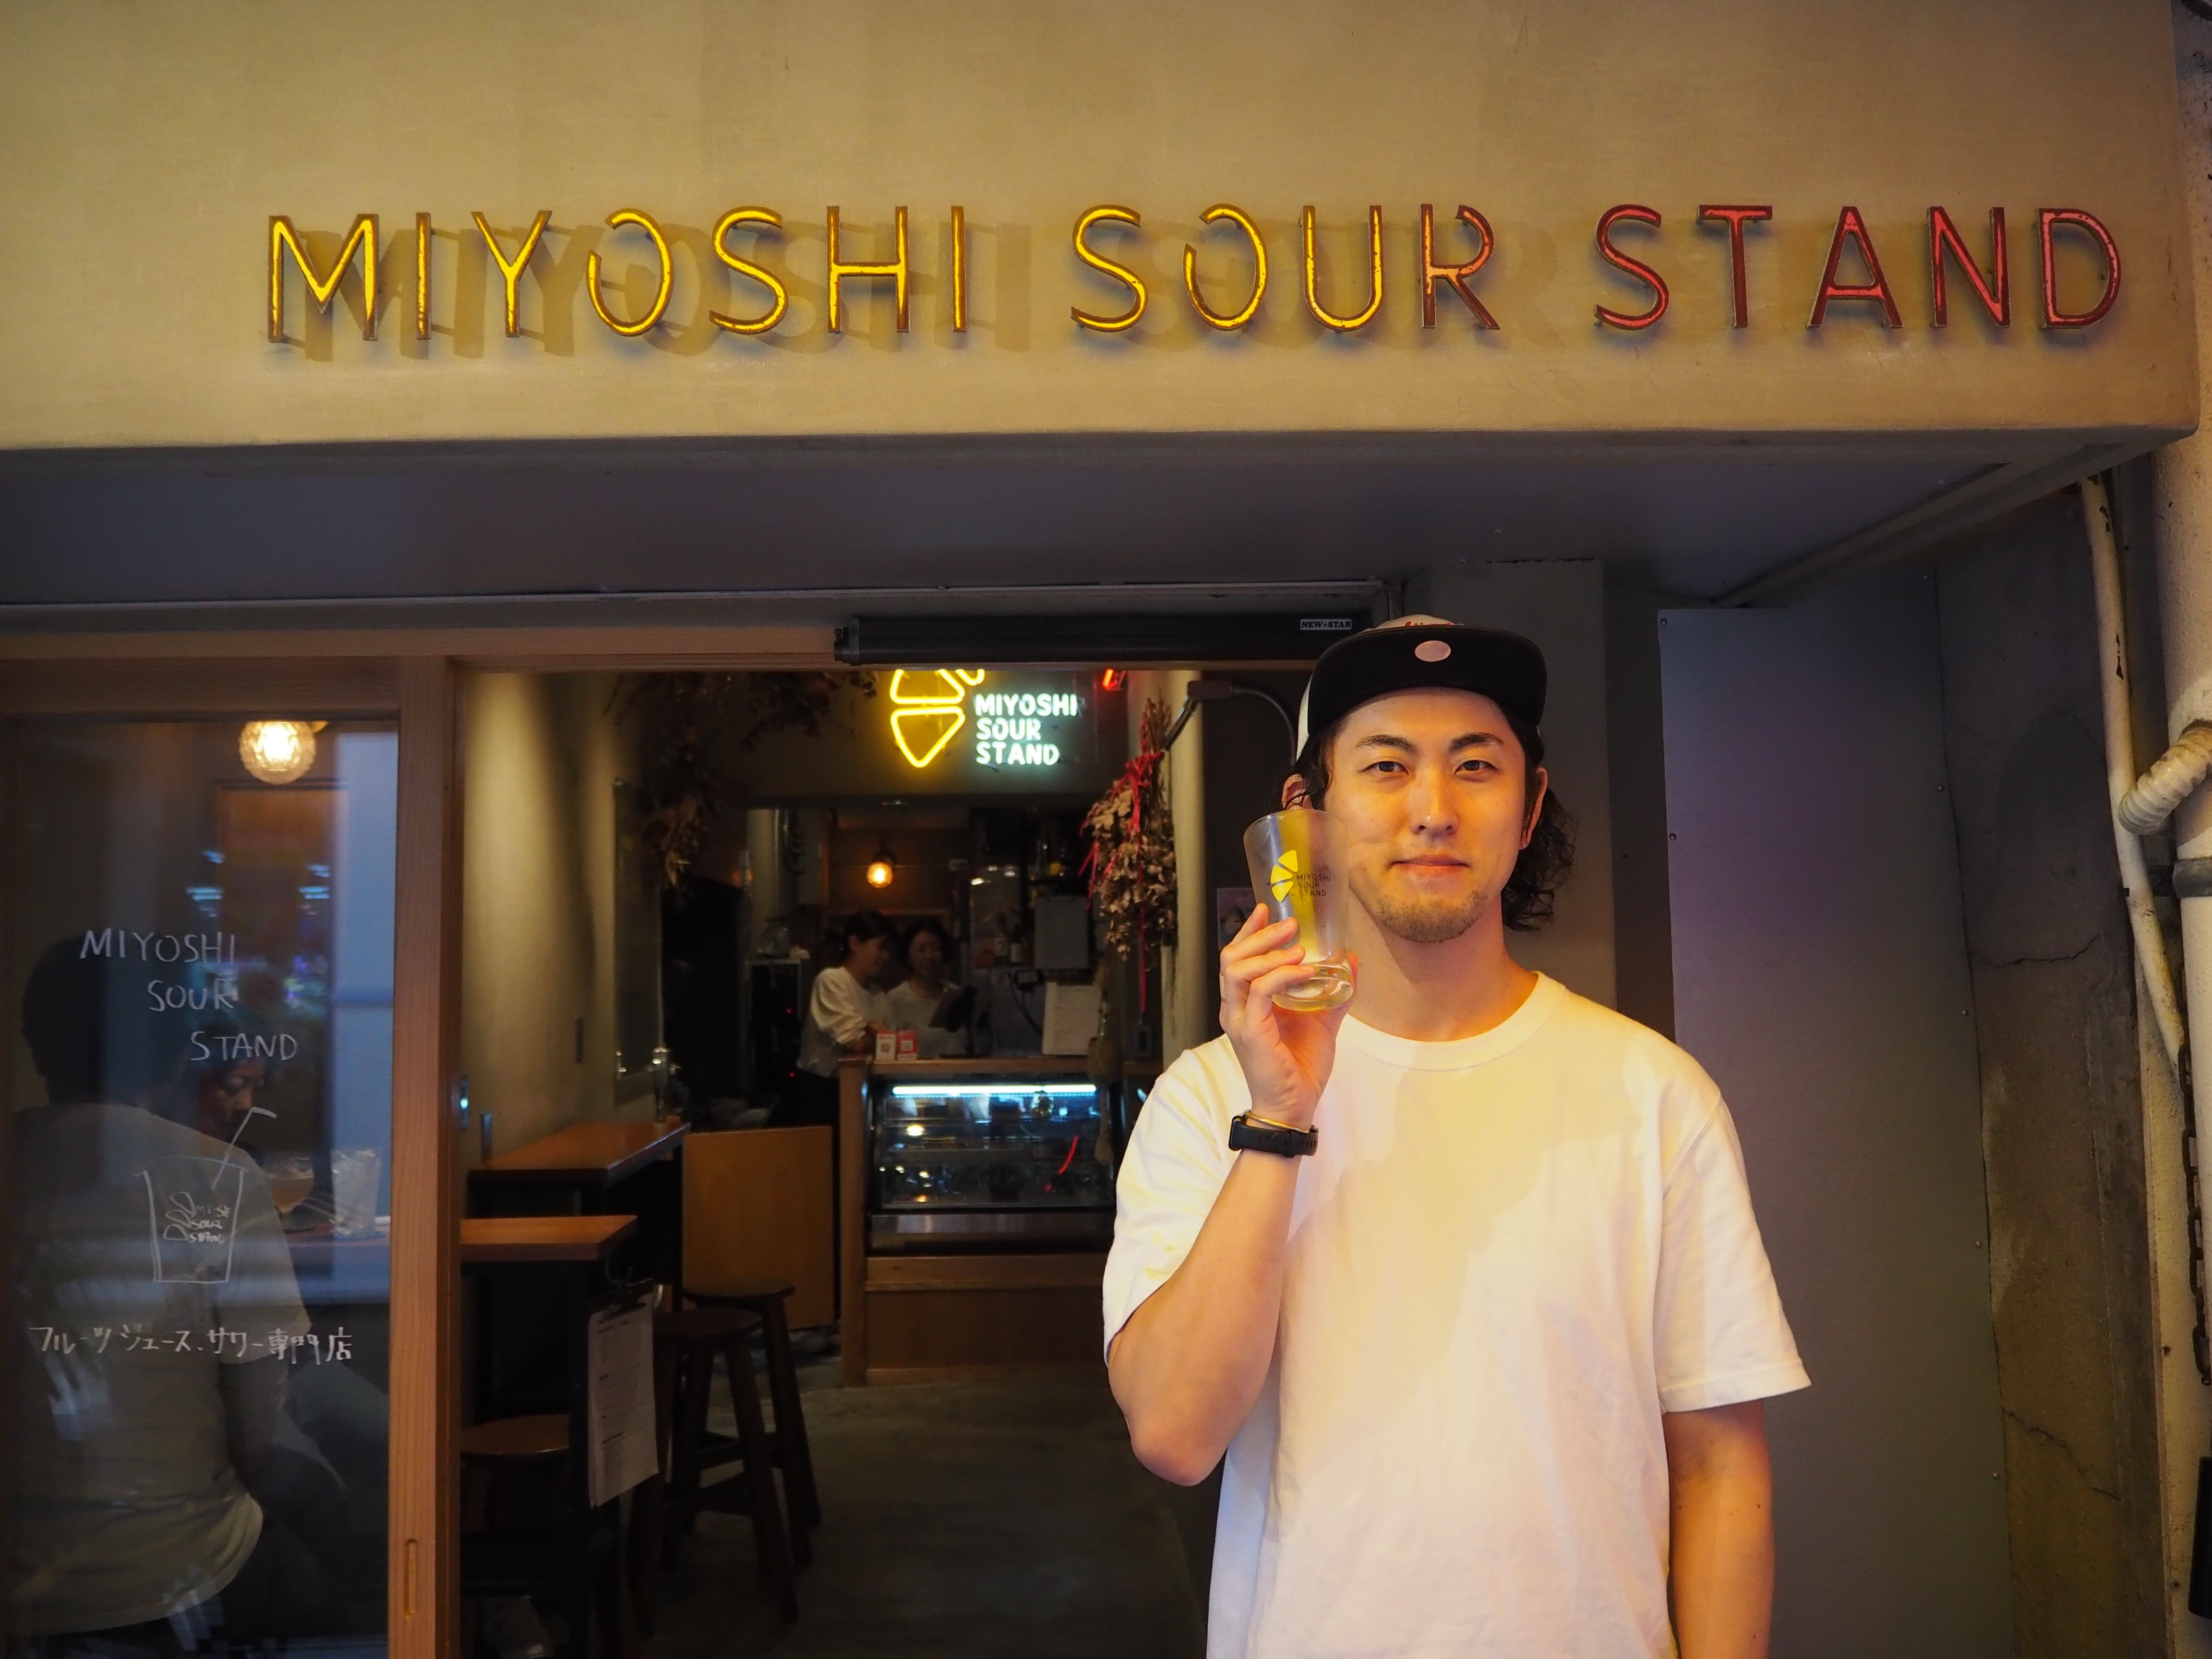 沖縄の旬を、贅沢に堪能する。フルーツサワー・フルーツジュース専門店「Miyoshi Sour stand」